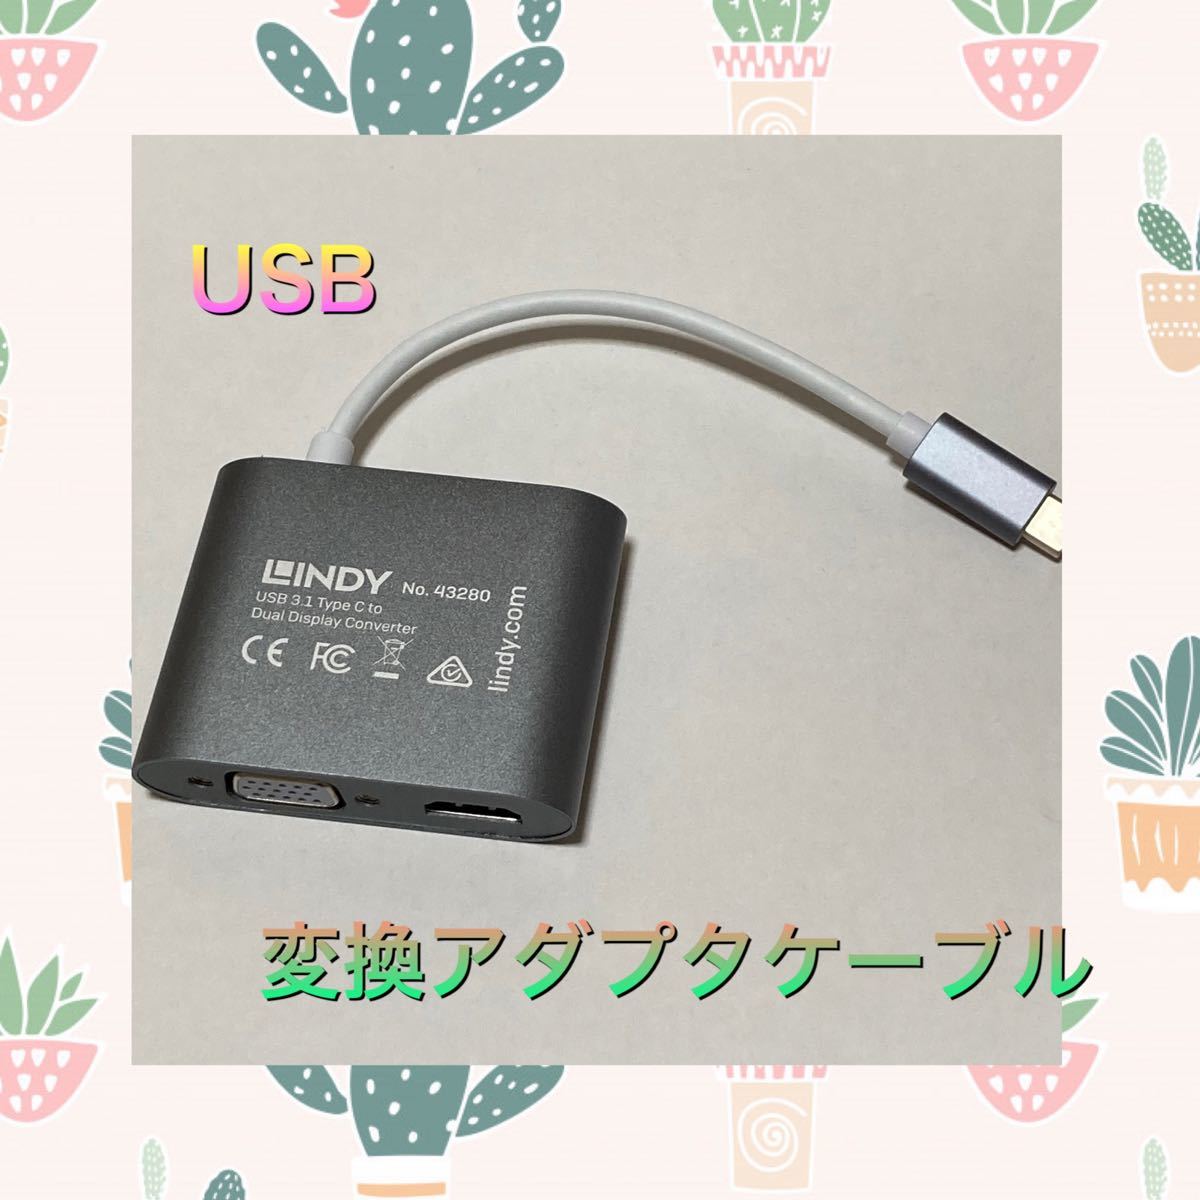 【新古品】USB 変換アダプタケーブルThunderbolt 3互換、0.11m